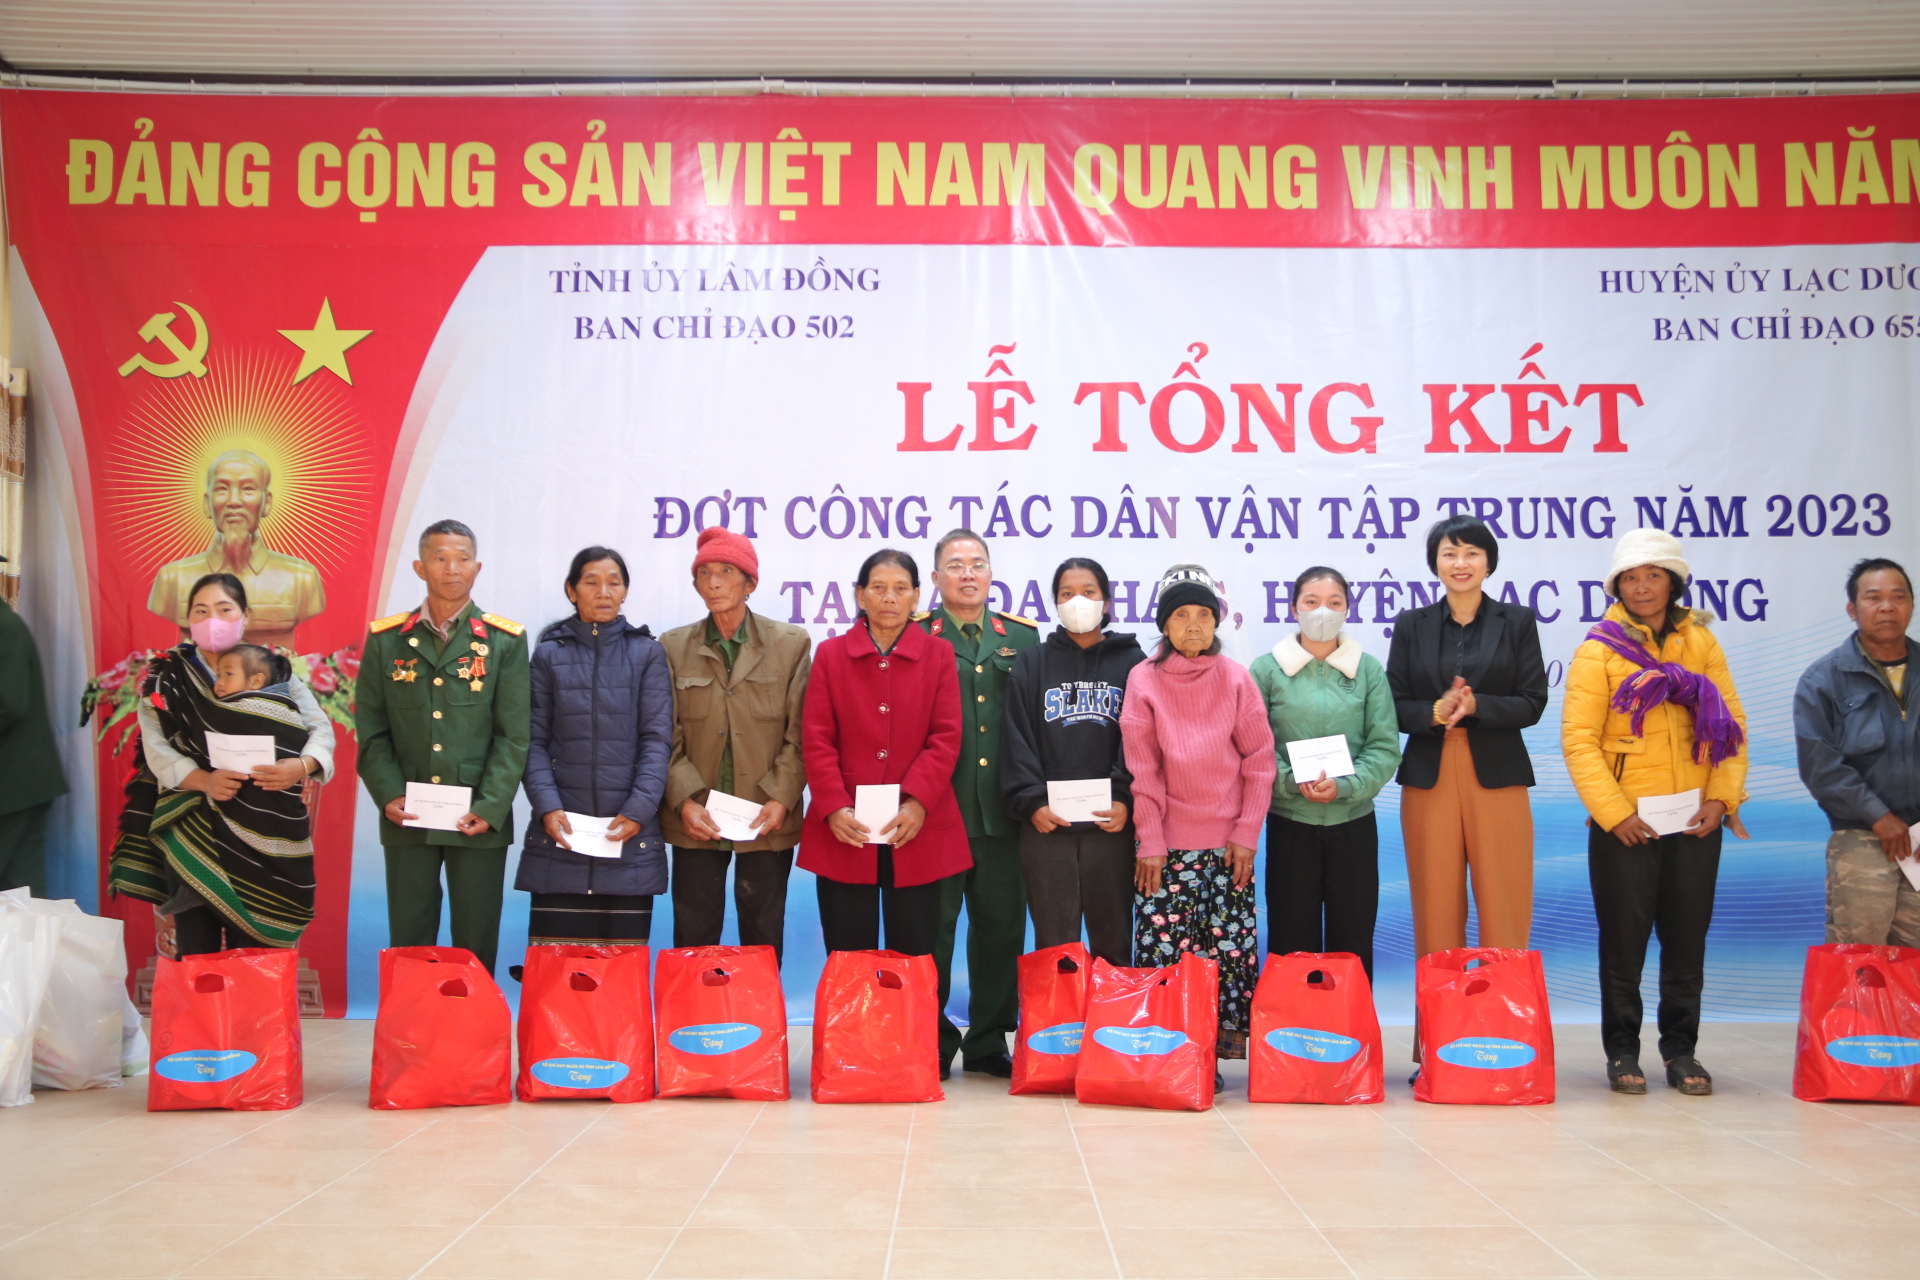 Tổng kết đợt công tác dân vận tại xã Đạ Chais, huyện Lạc Dương